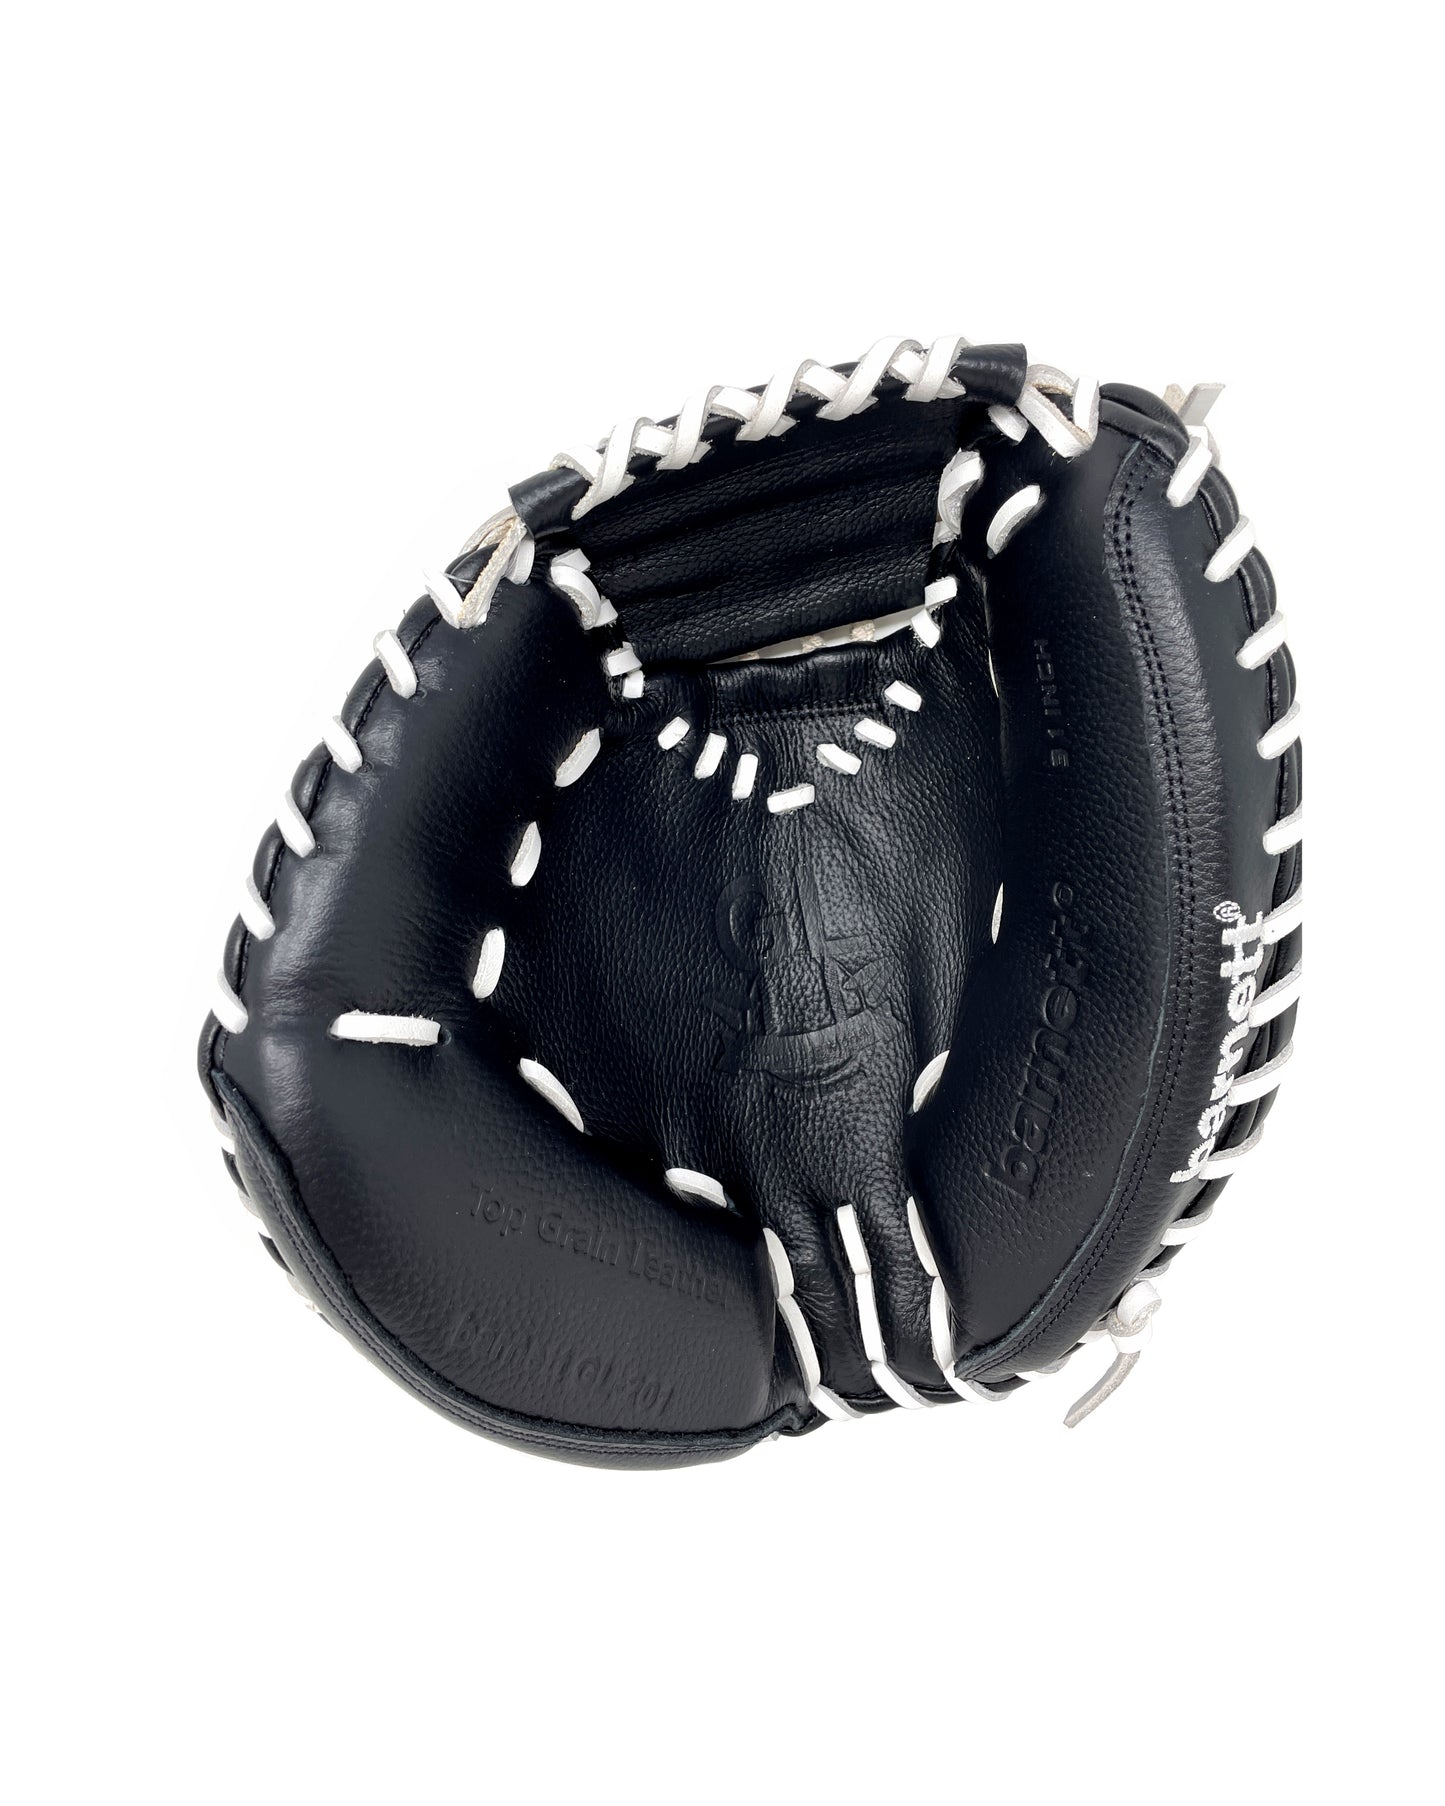 GL-201 gant de baseball cuir de catch pour adulte 32, Noir